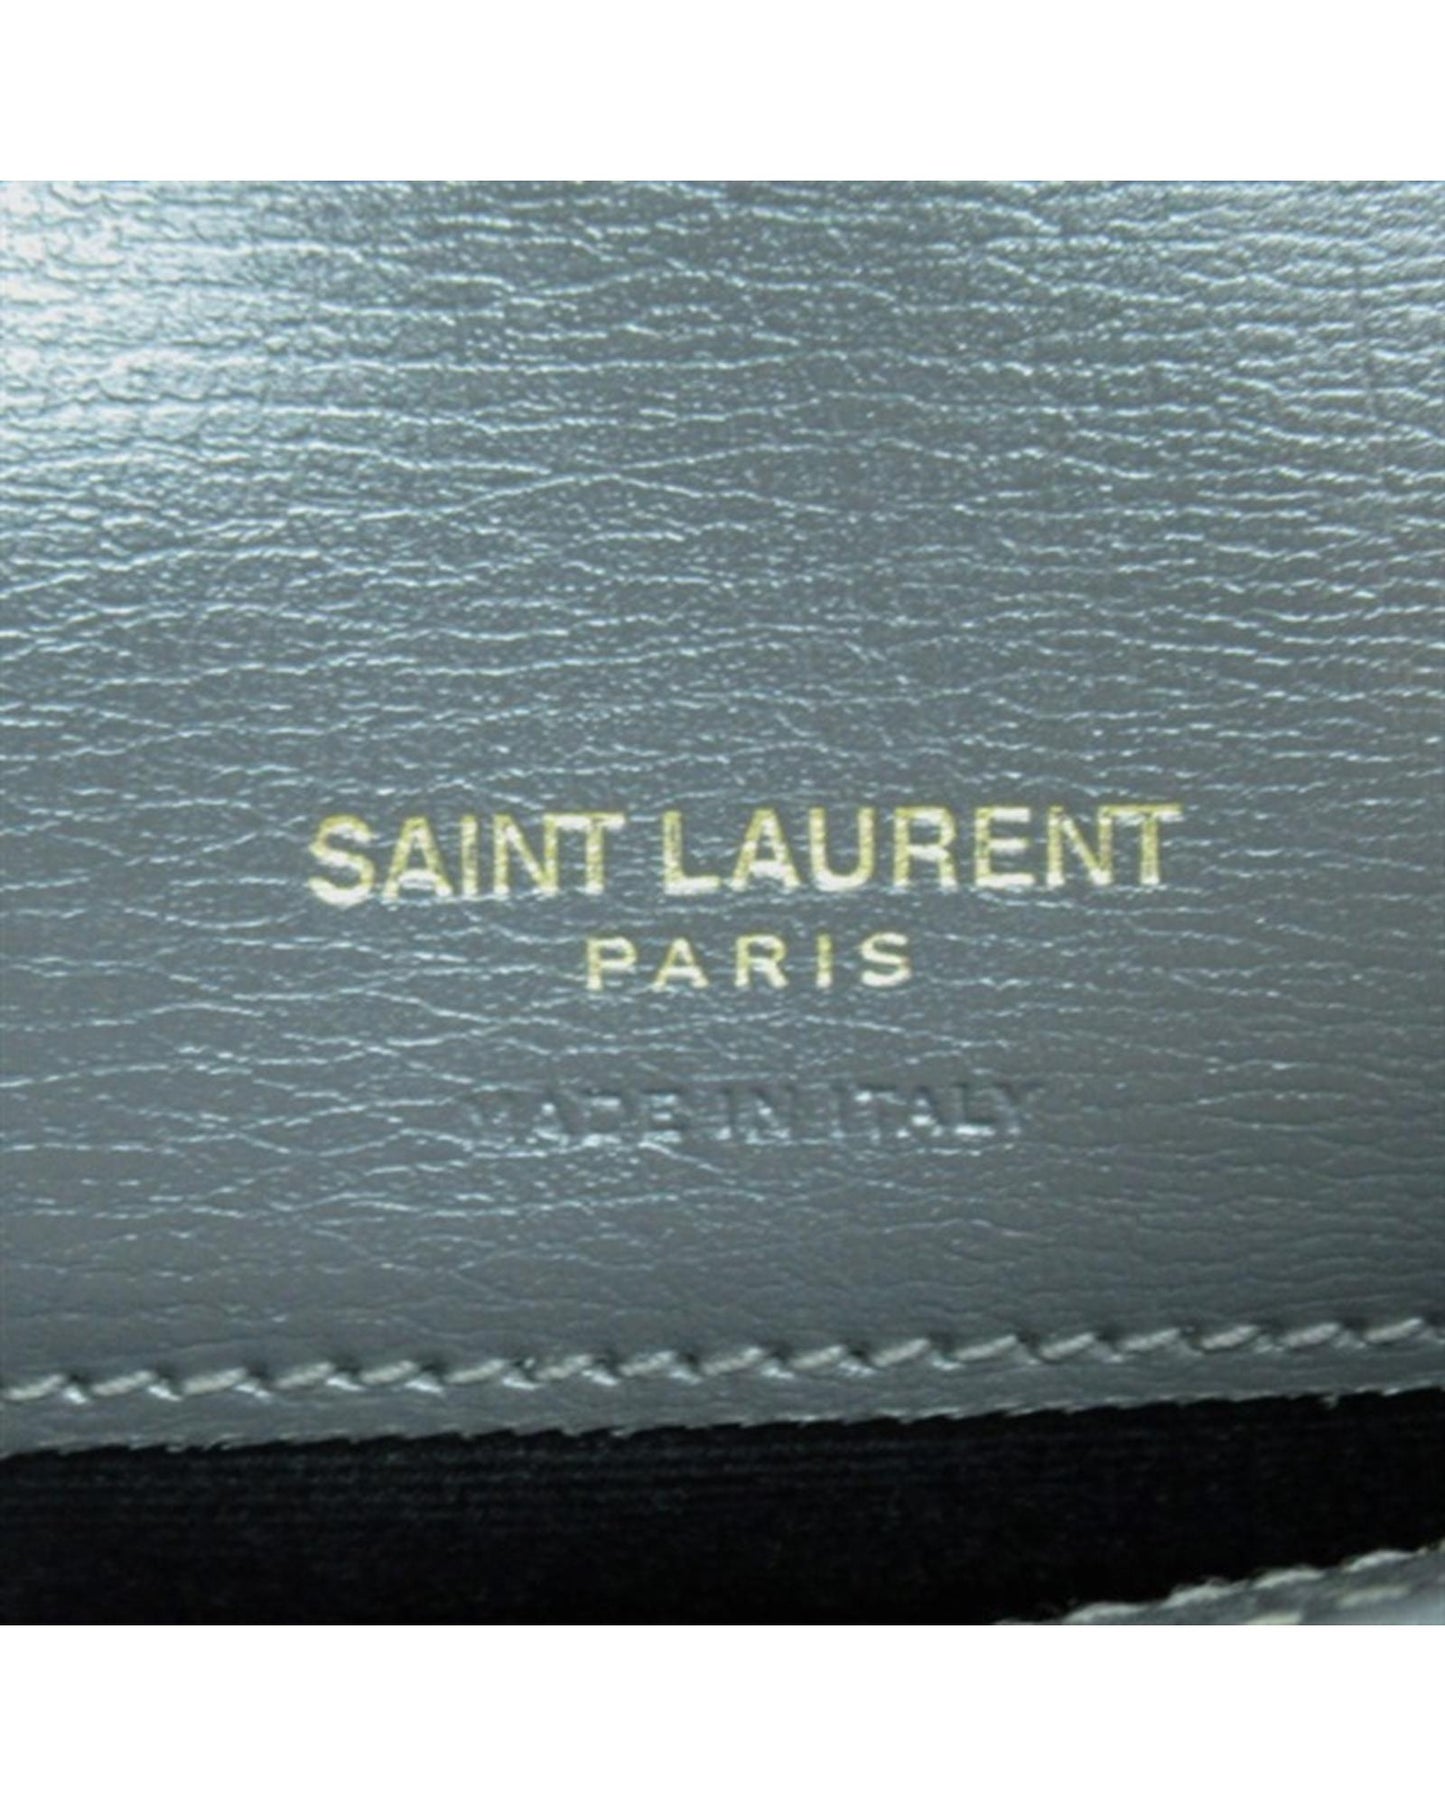 Yves Saint Laurent Women's Grey Phone Holder Crossbody Bag by Yves Saint Laurent in Grey